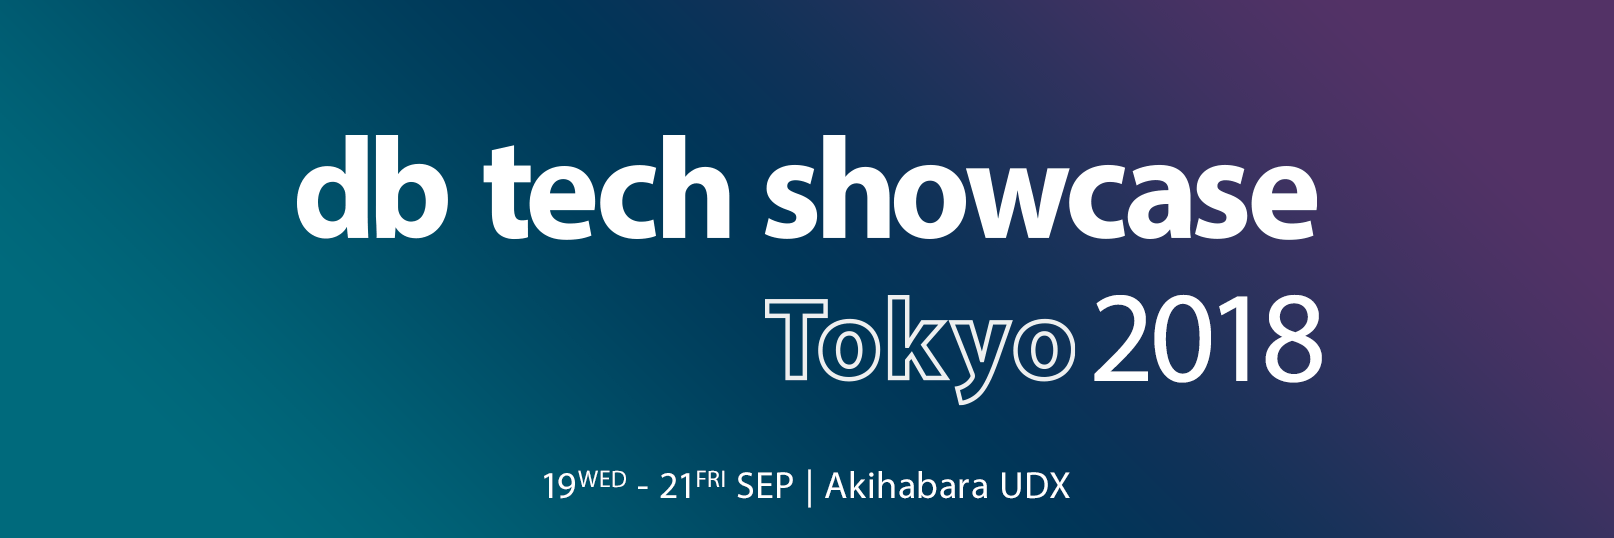 db tech showcase Tokyo 2018